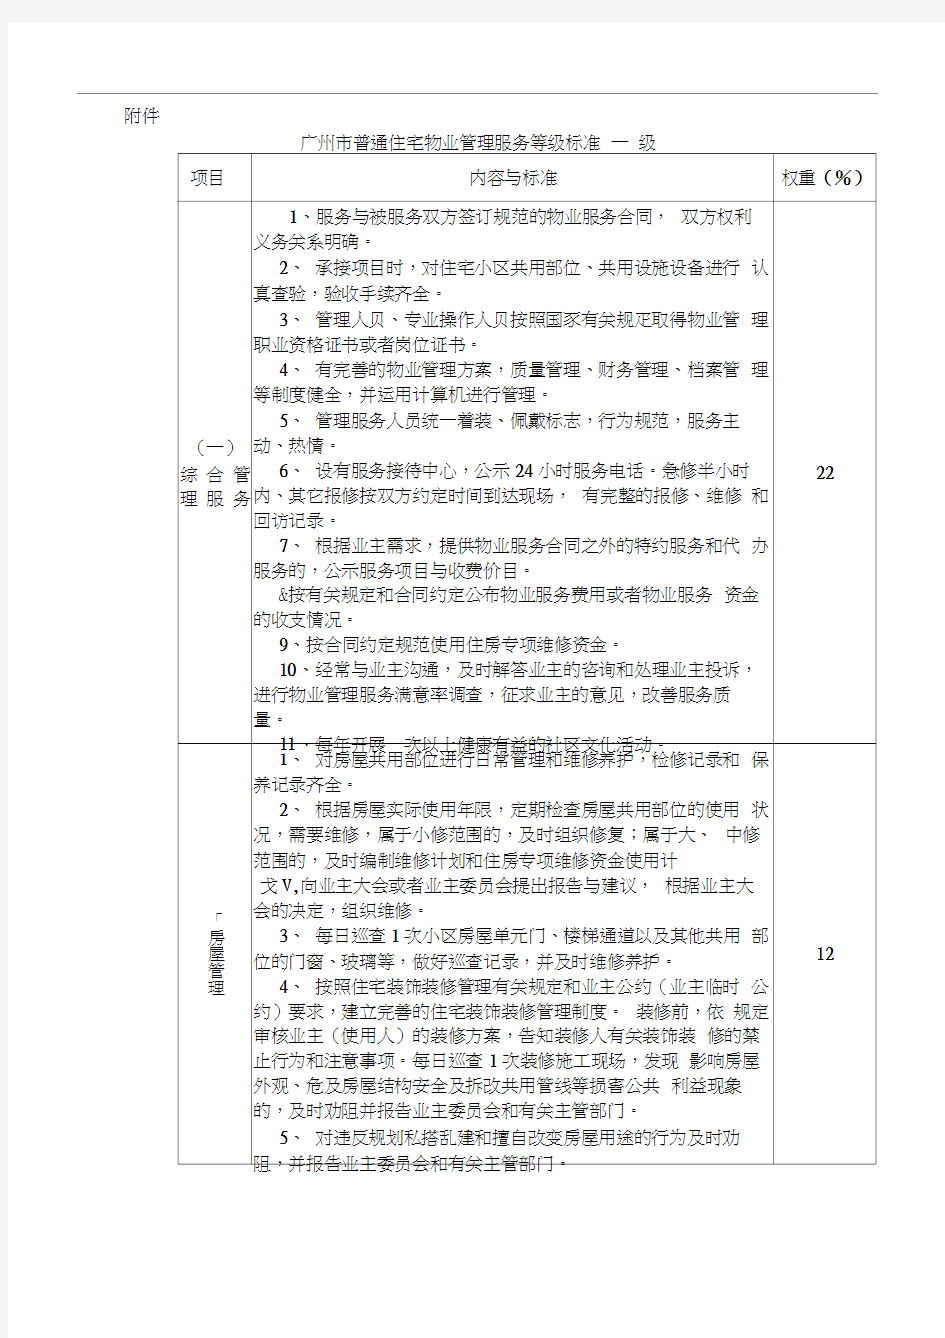 广州市普通住宅物业管理服务等级标准